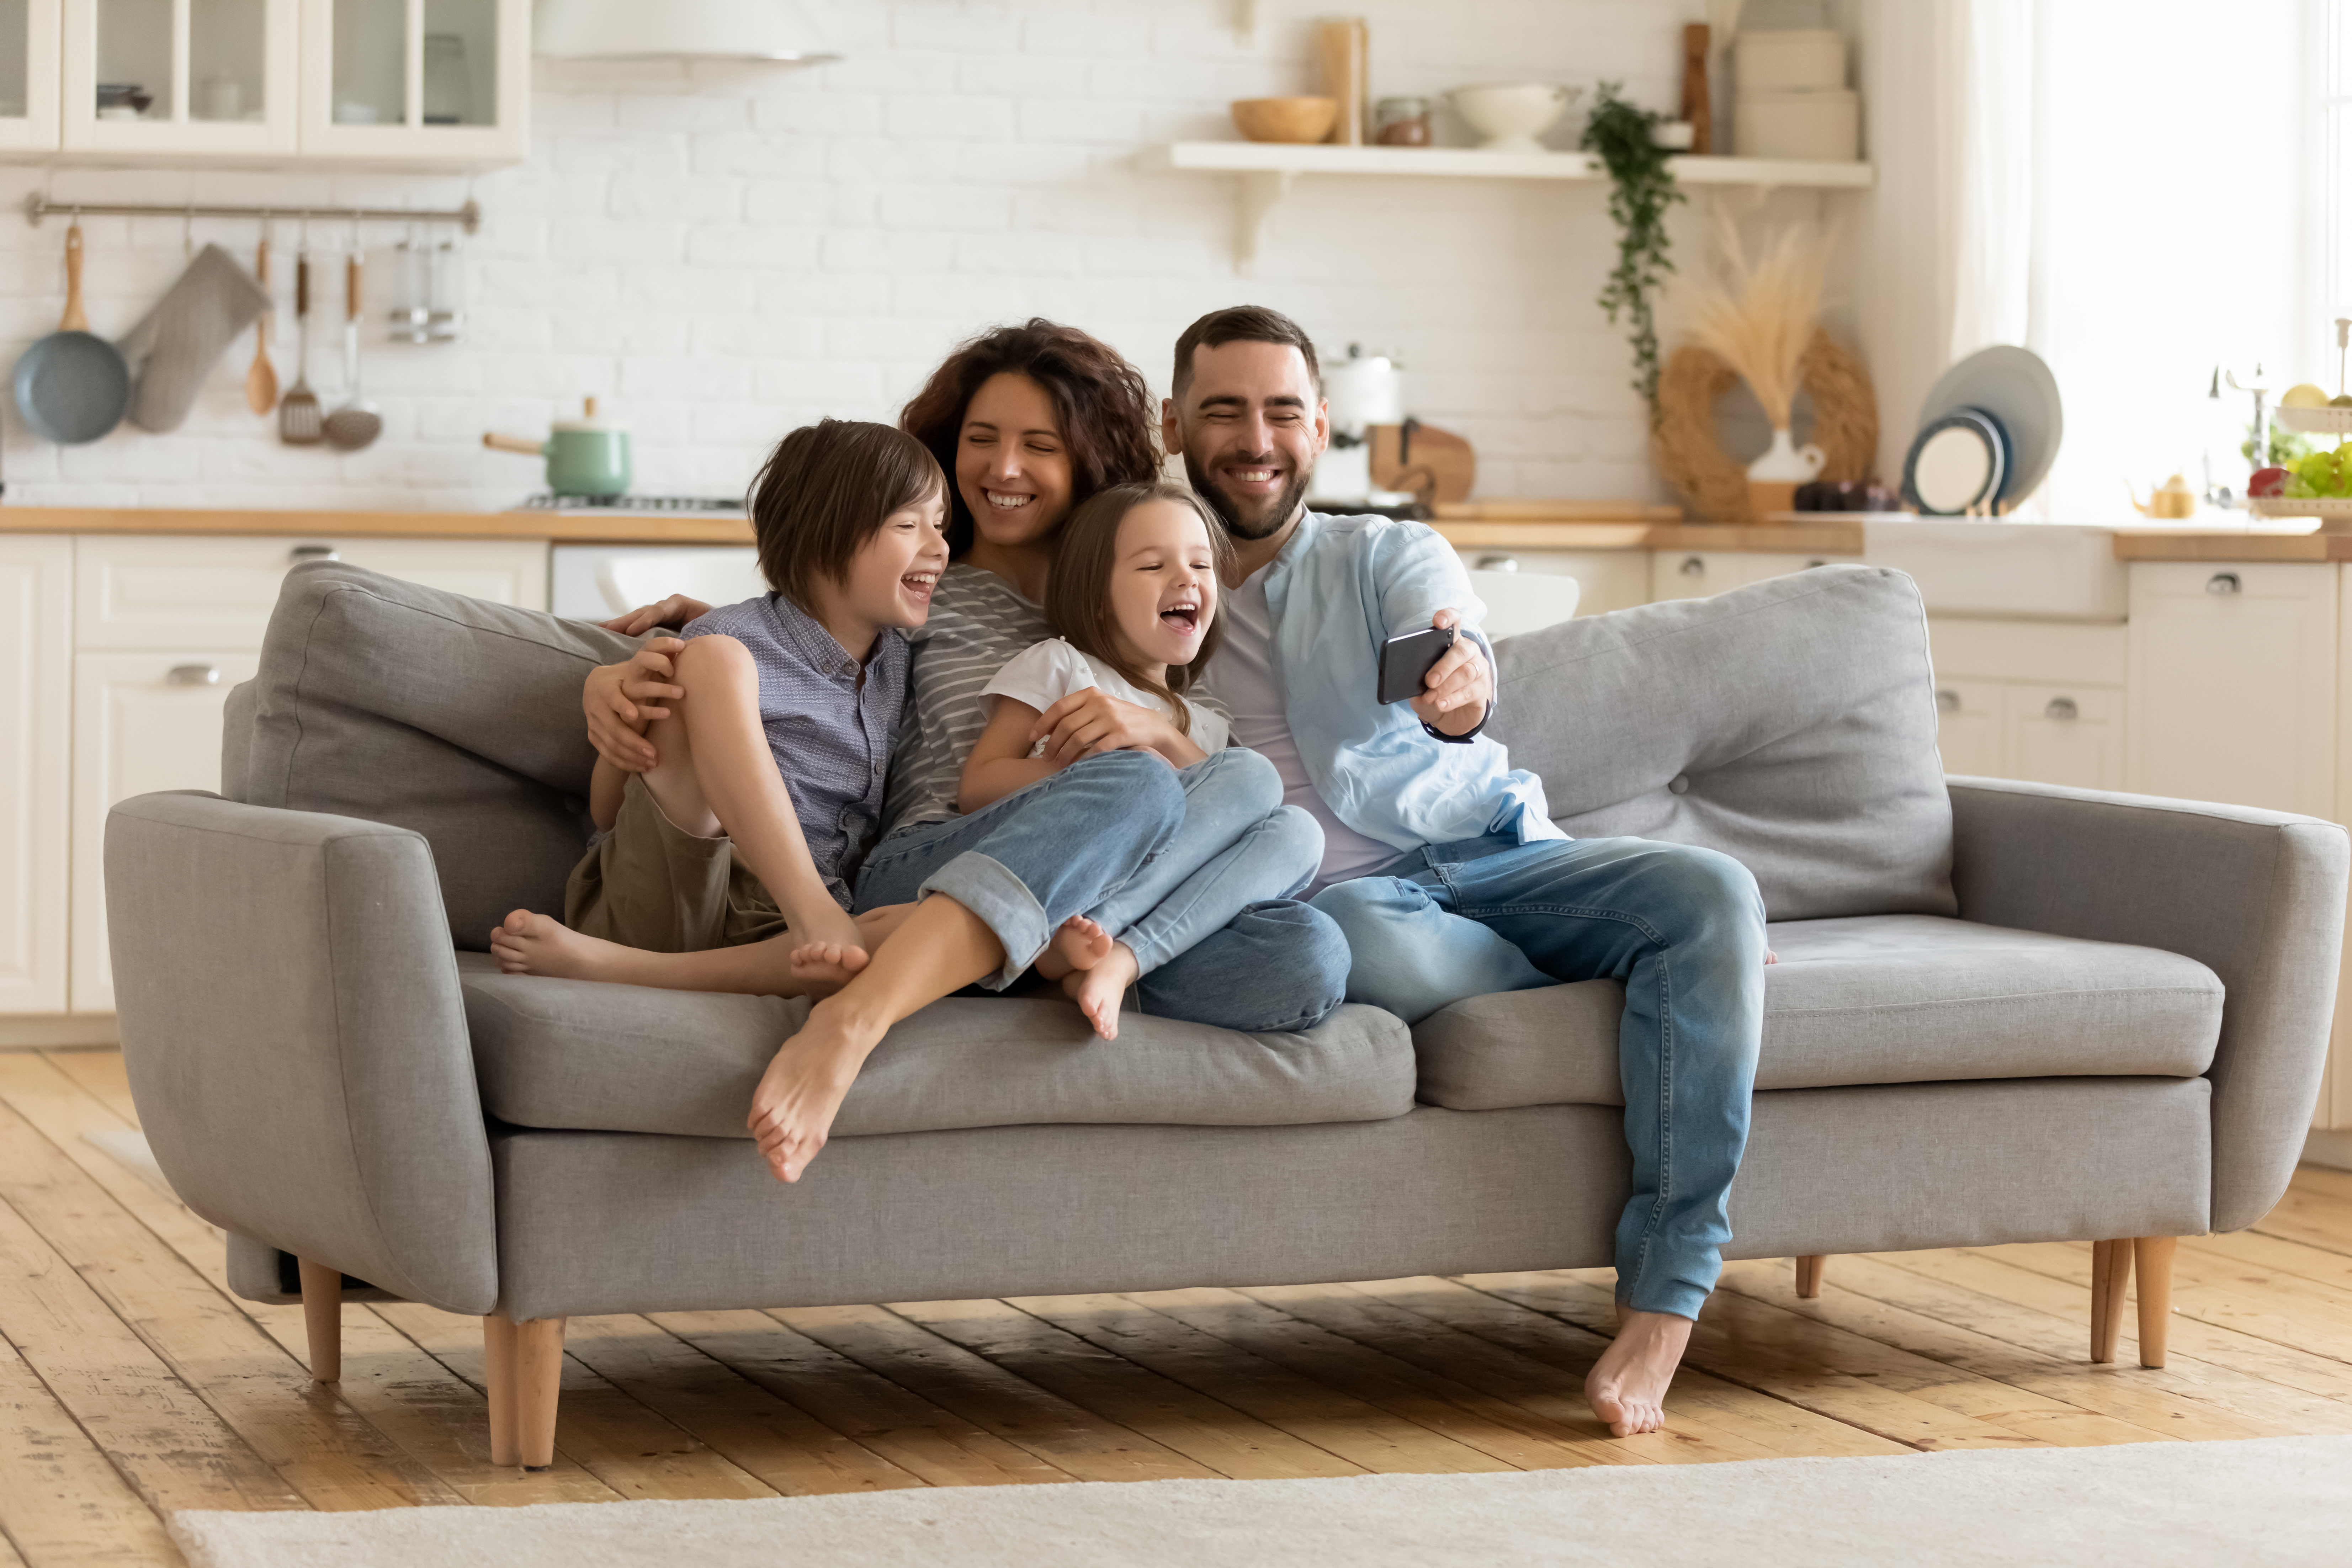 Eine glückliche Familie | Quelle: Shutterstock